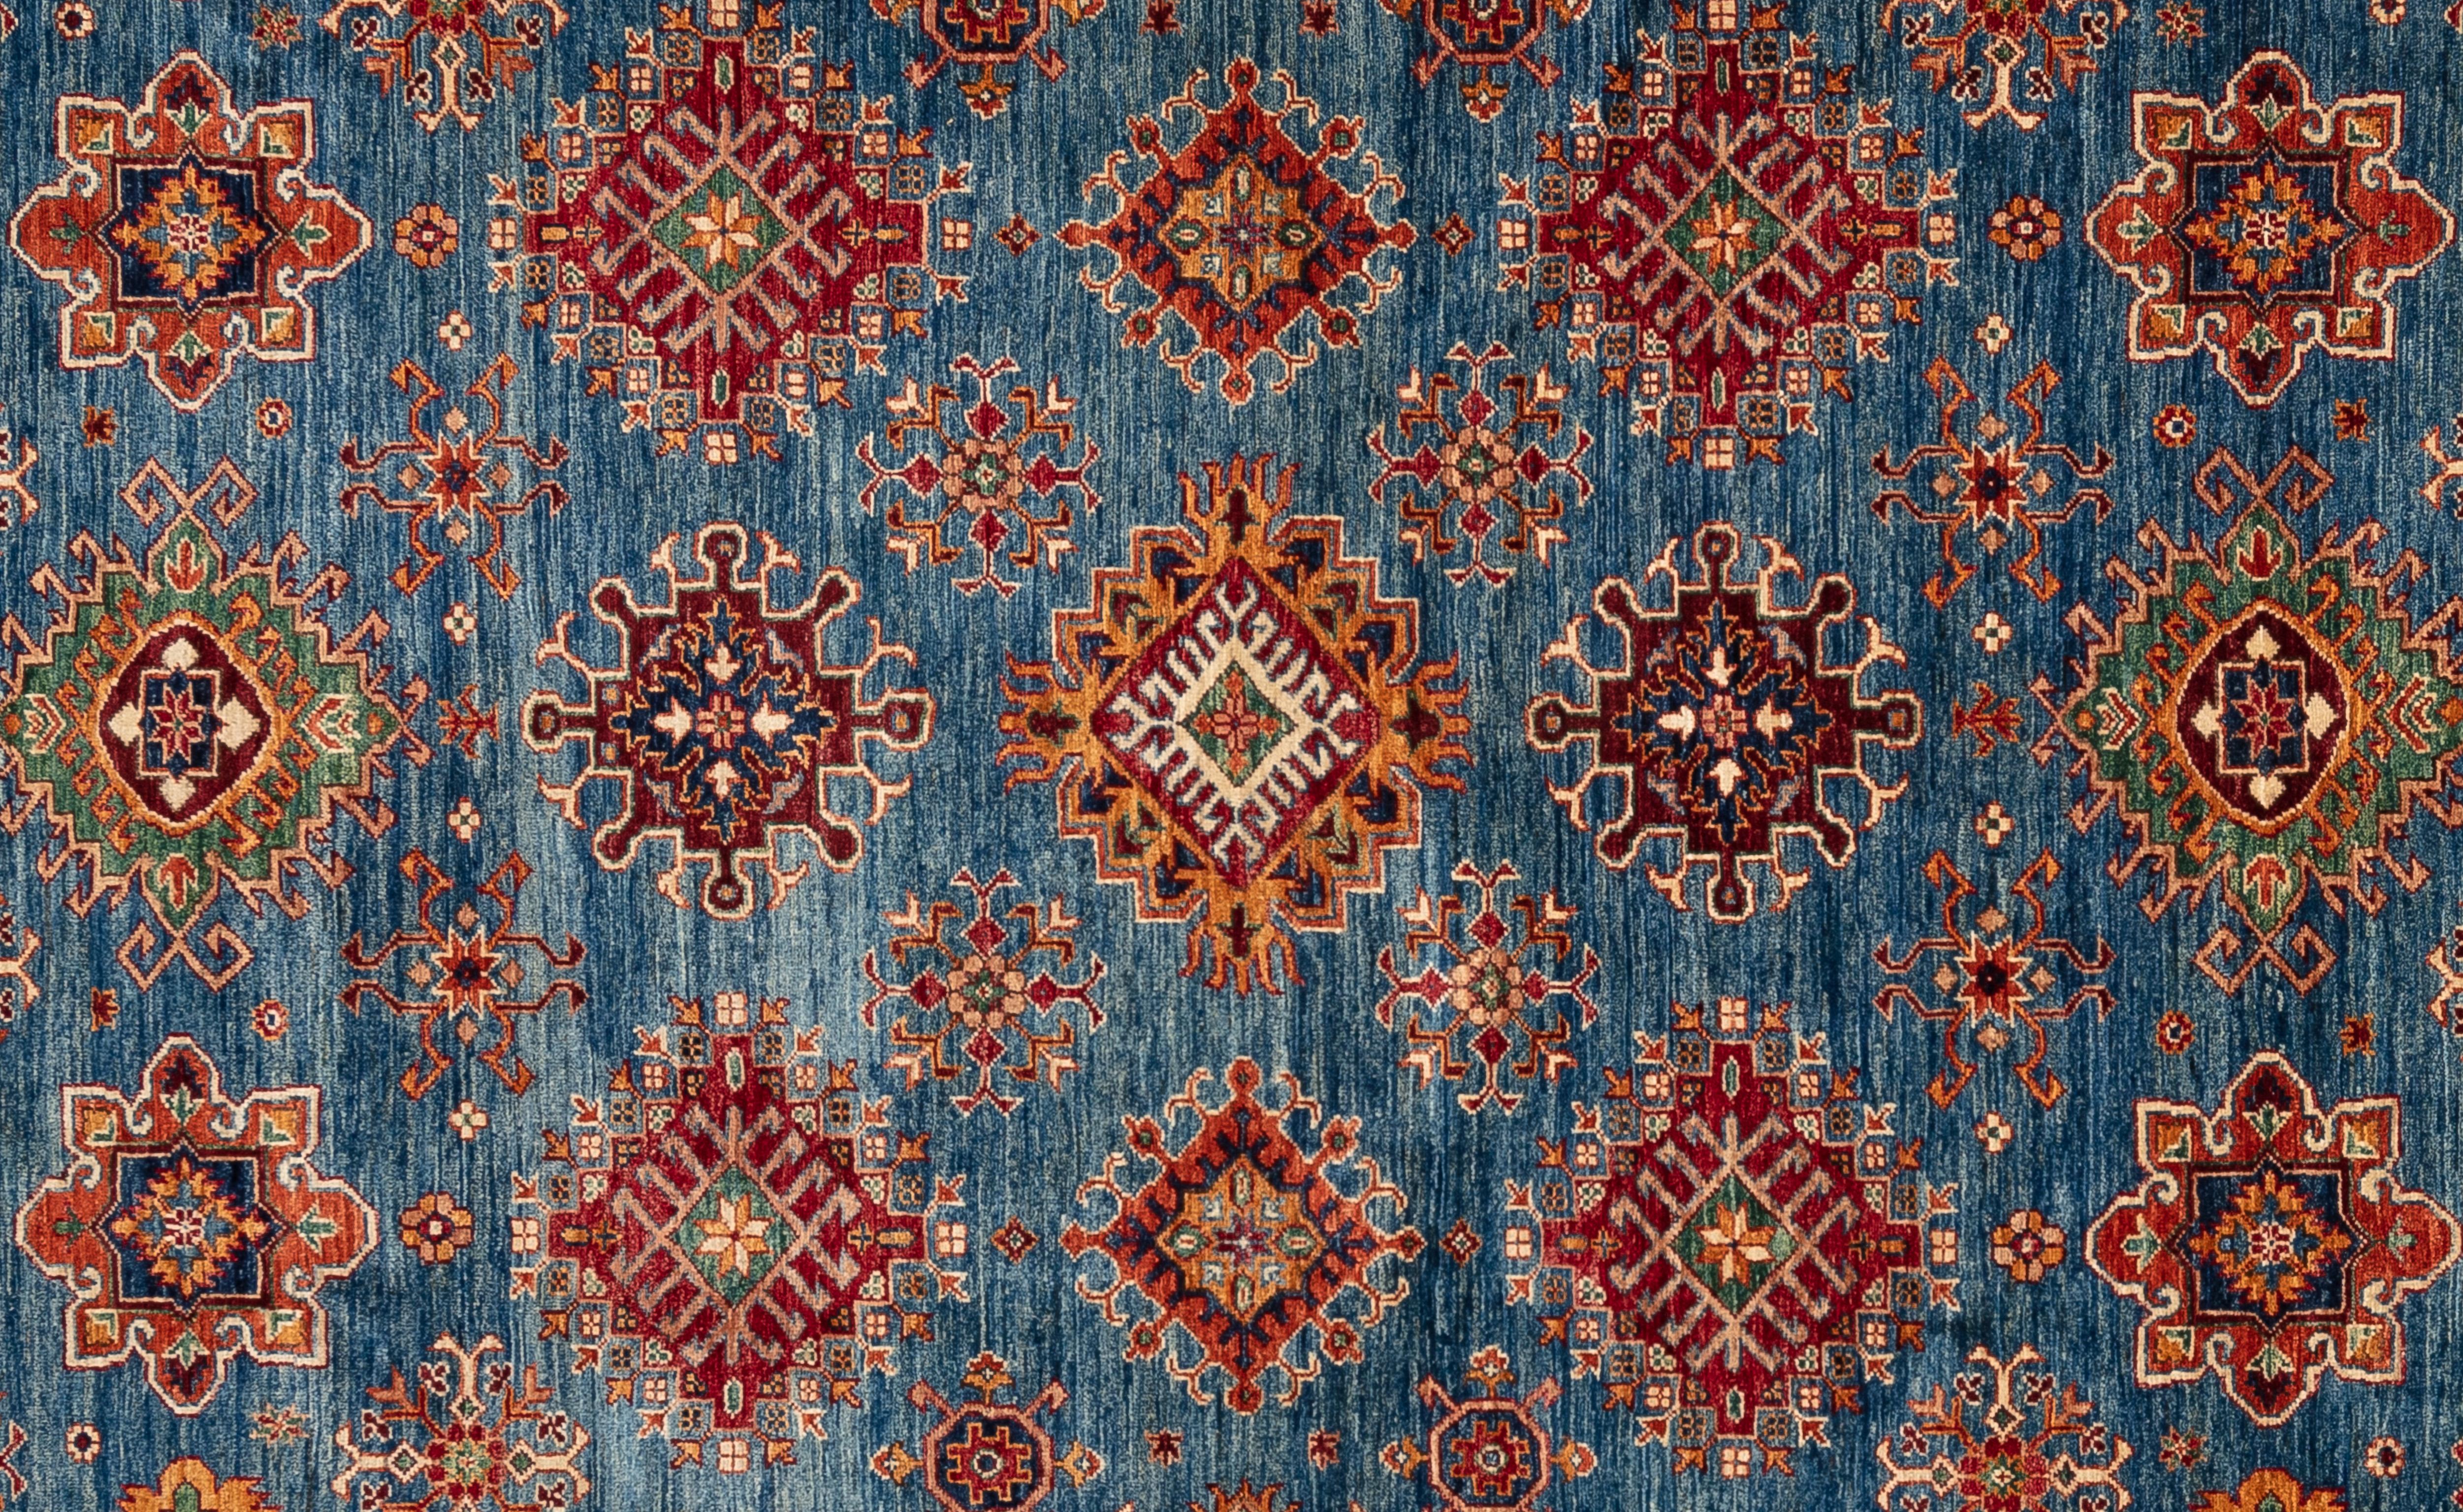 Handgewebt aus 100 % handgesponnener Wolle, in den subtropischen Wäldern Pakistans. Dieser atemberaubende Kazak-Teppich ist von kaukasischen Teppichen inspiriert. Sein allover-Stammesmuster und seine einzigartige Farbgebung machen diesen Teppich zu